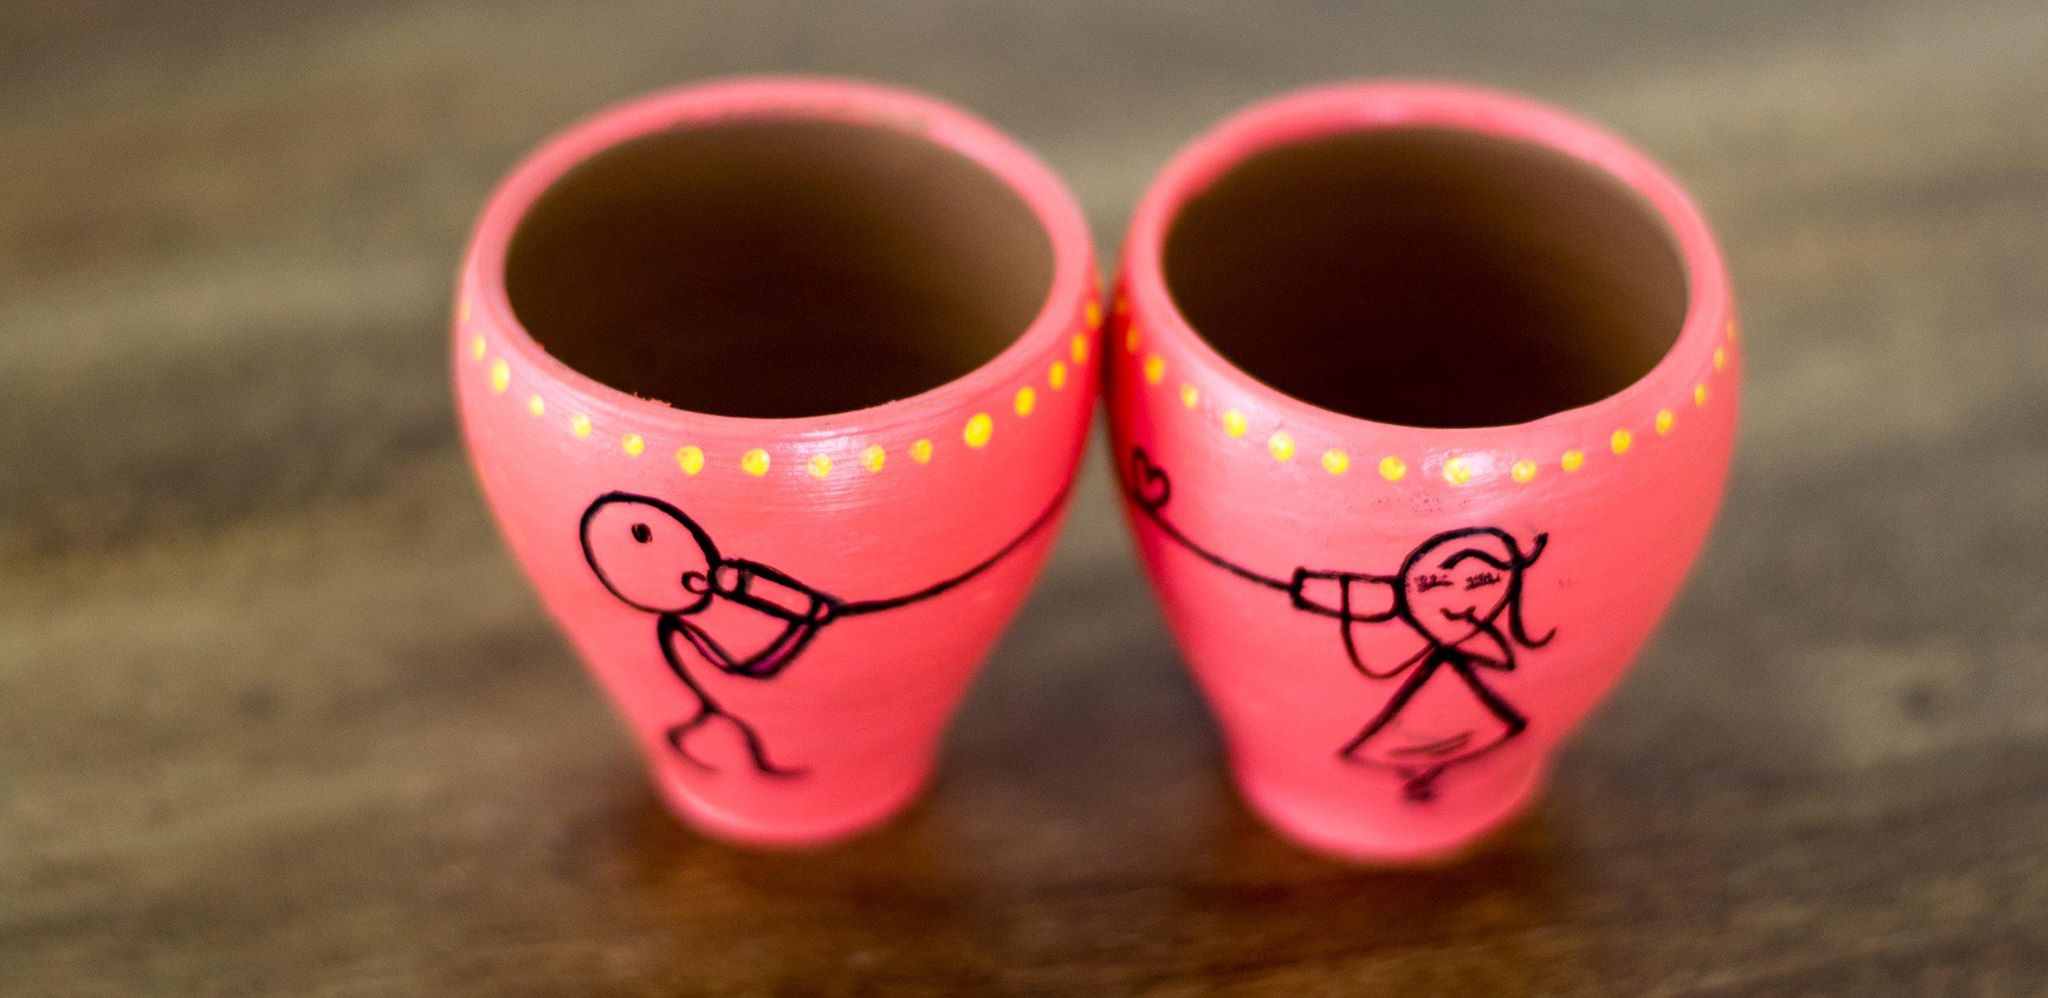 Cute cups